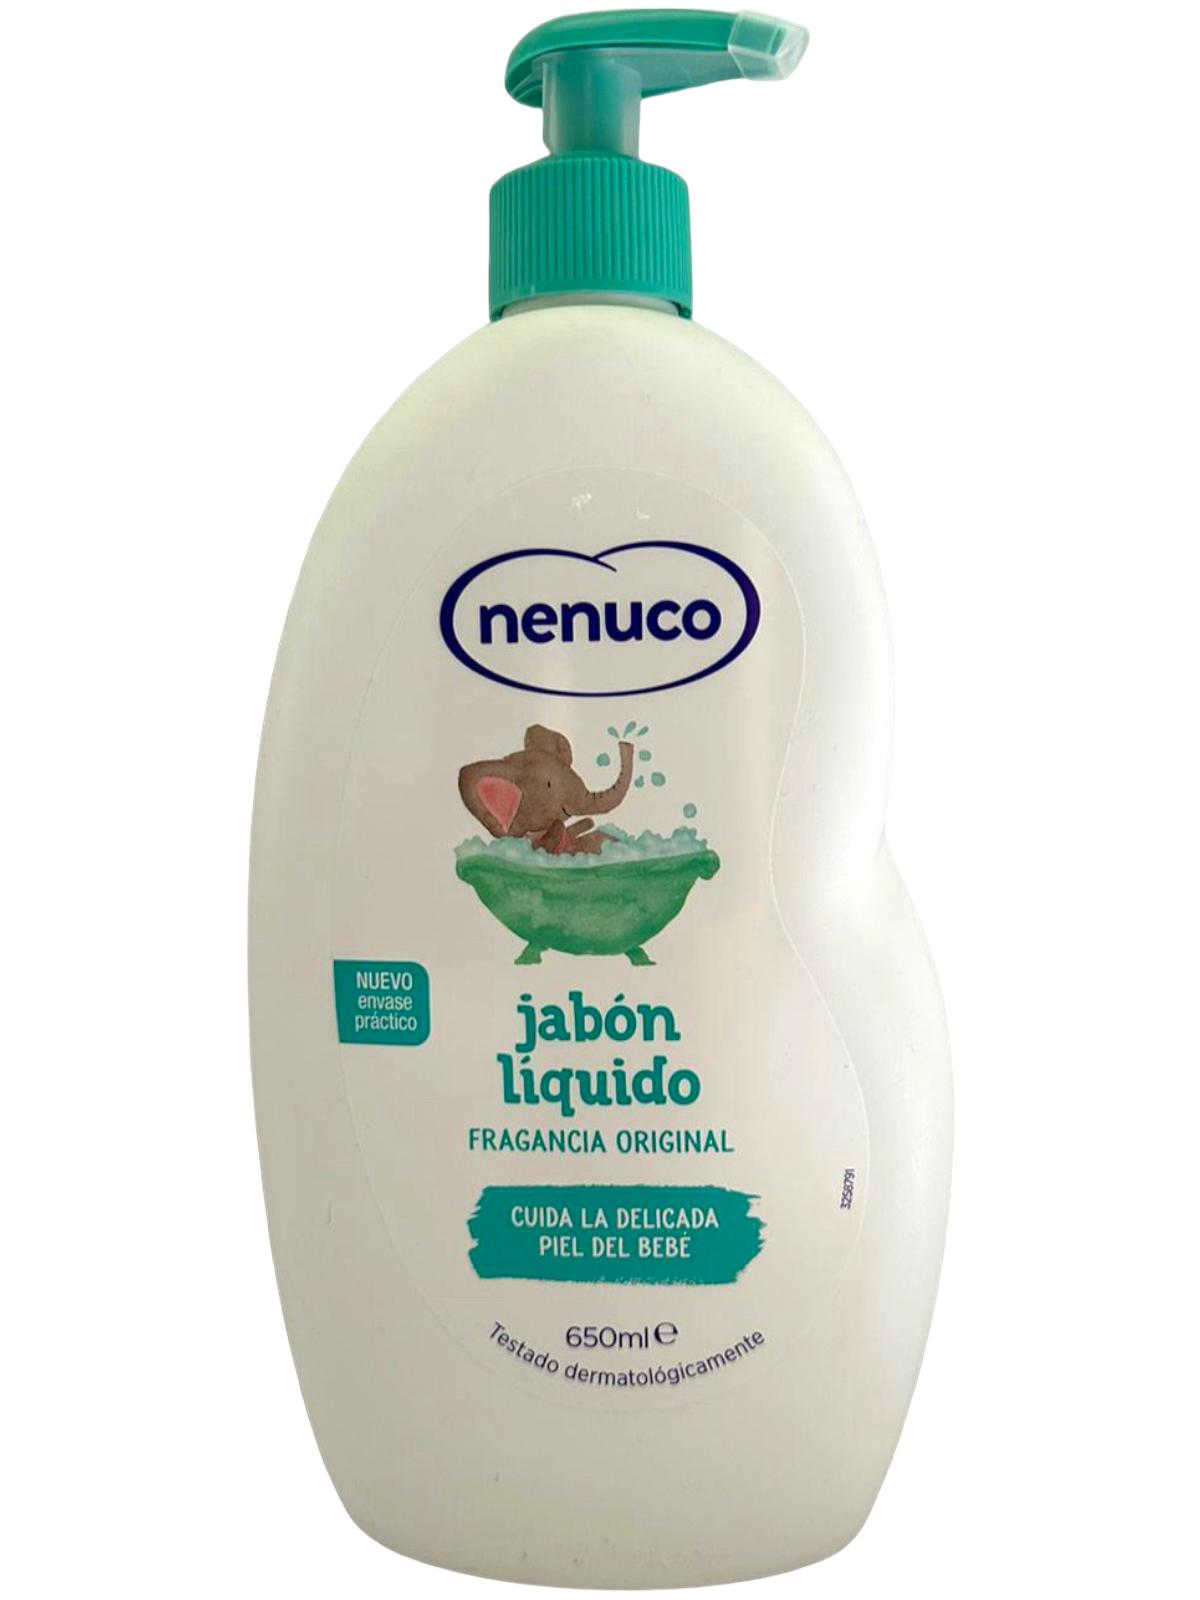 Nenuco Spanish Baby Baby Bath Soap Original 650ml